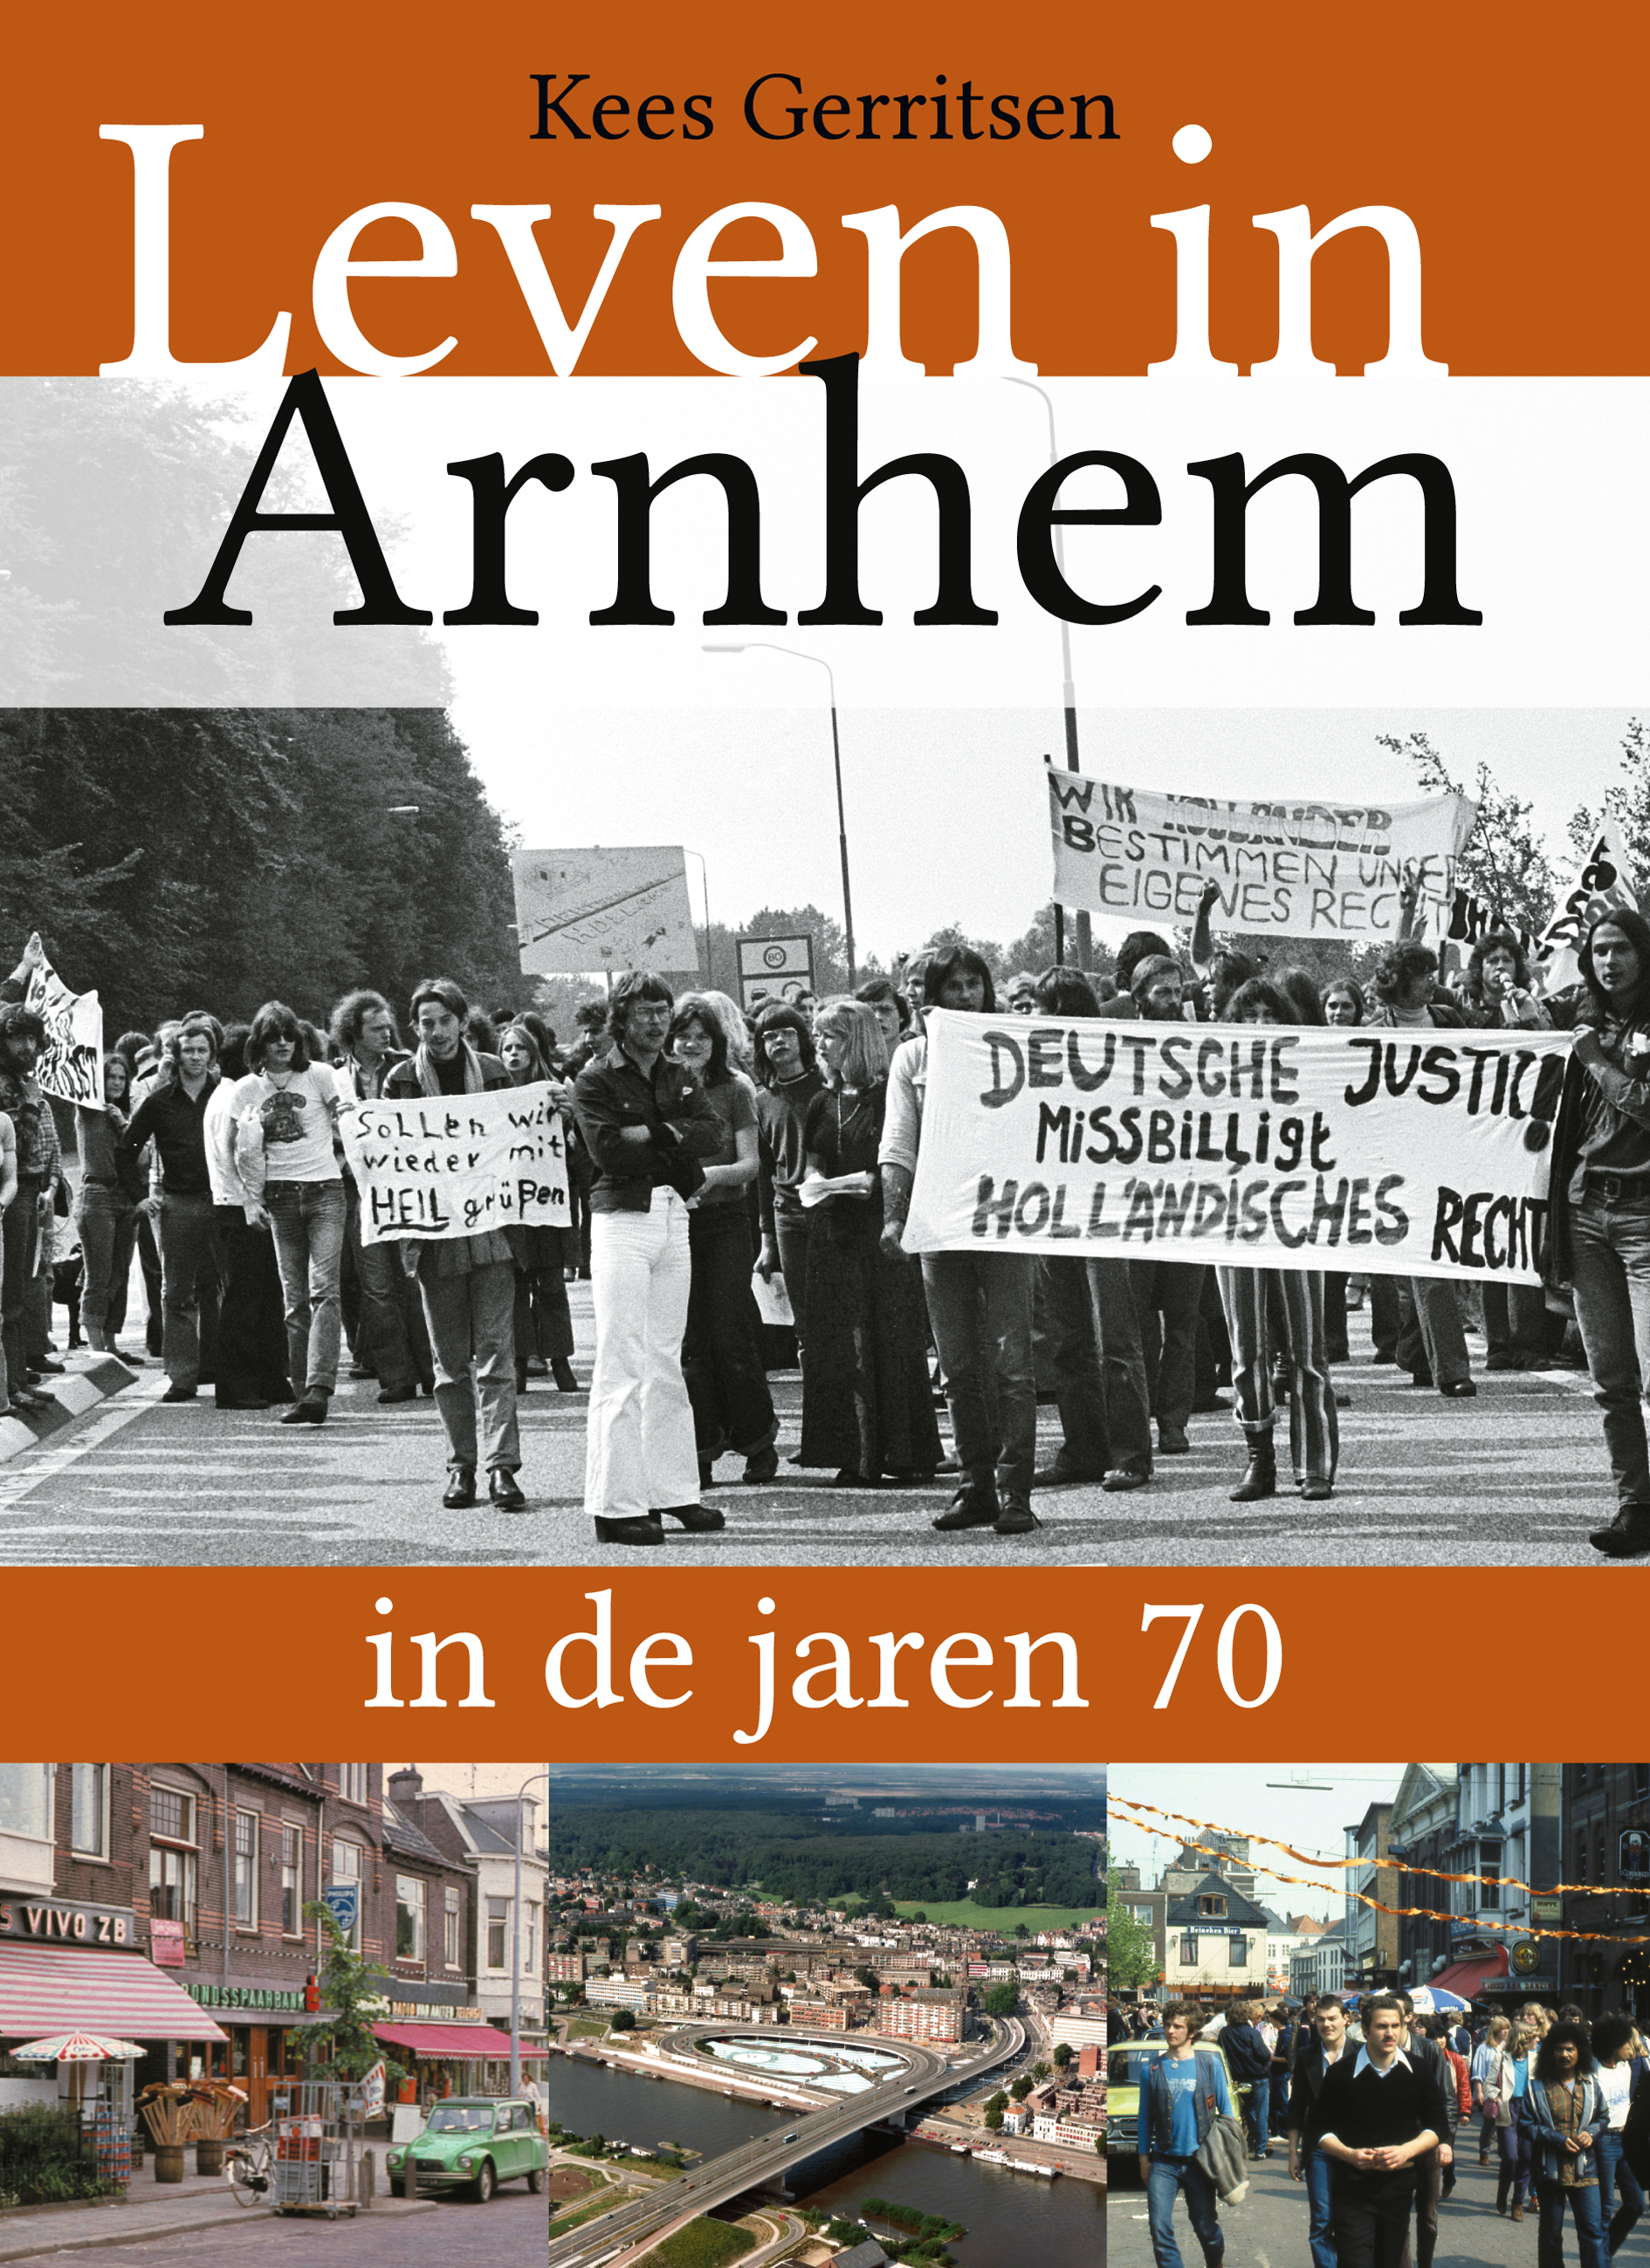 Leven in Arnhem in de jaren 70